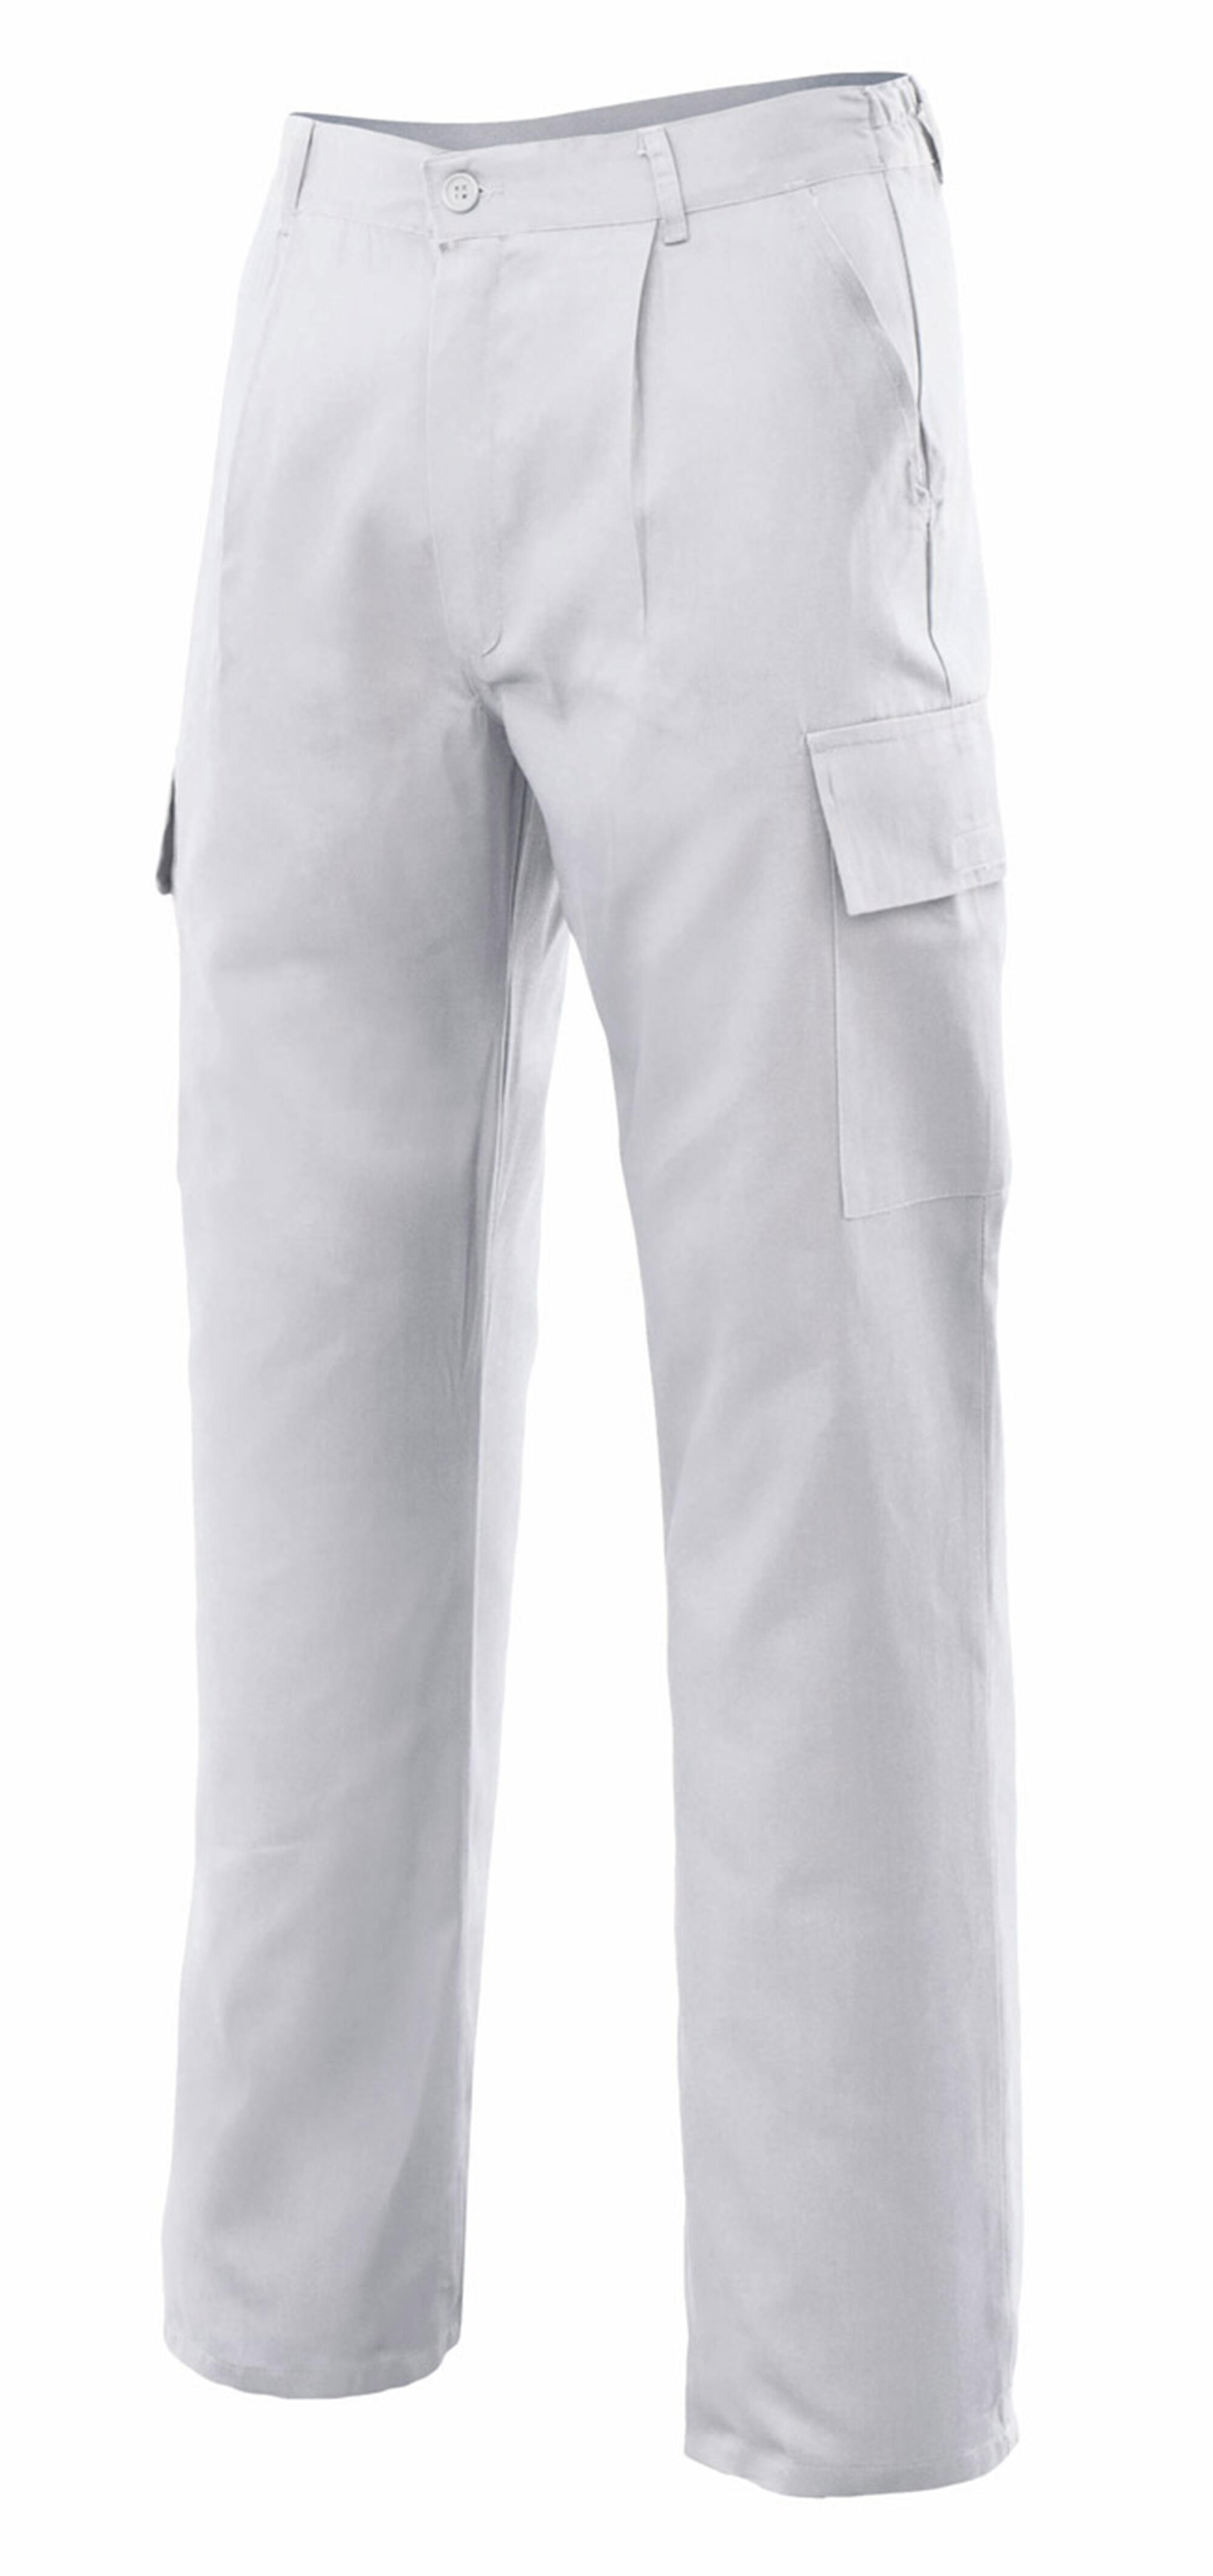 Pantalon de trabajo vertice multibolsillo blanco t60